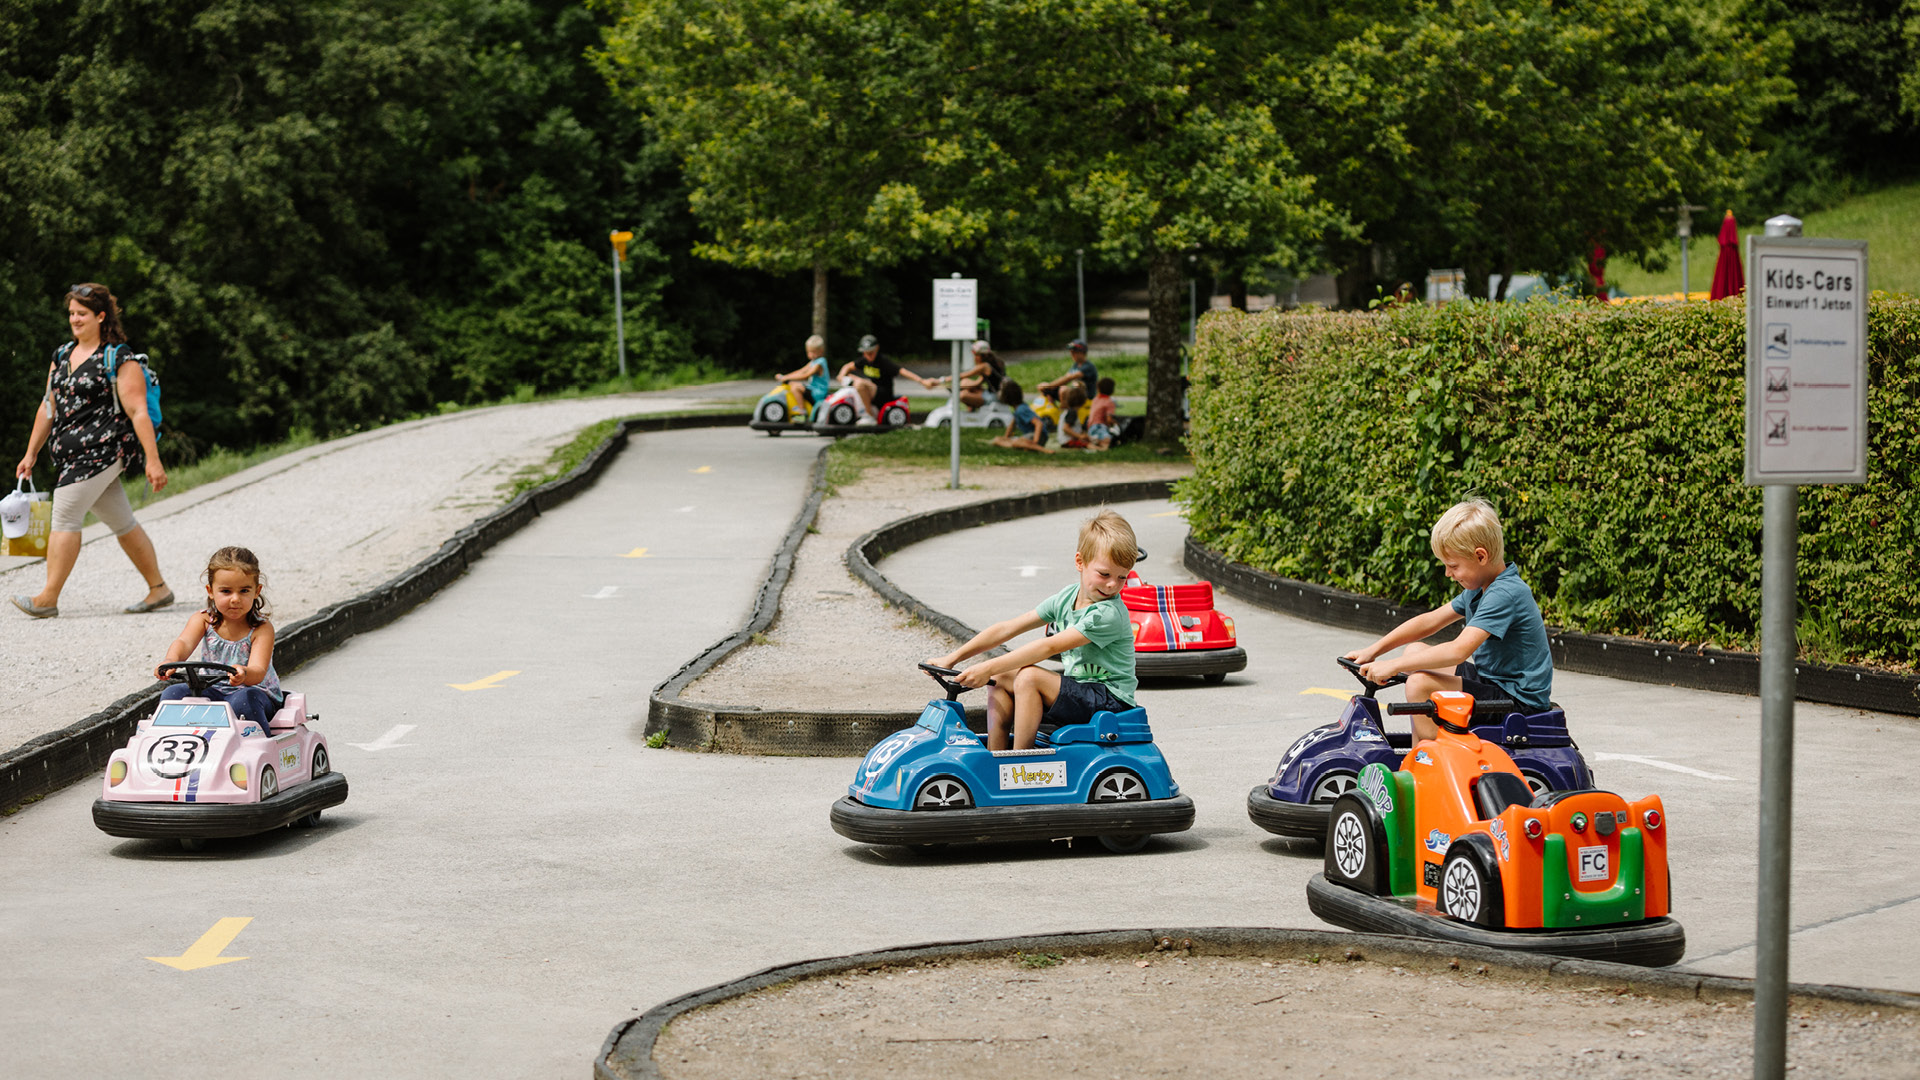 Drei kleine Kinder fahren auf kleinen Fahrzeugen um die Wette